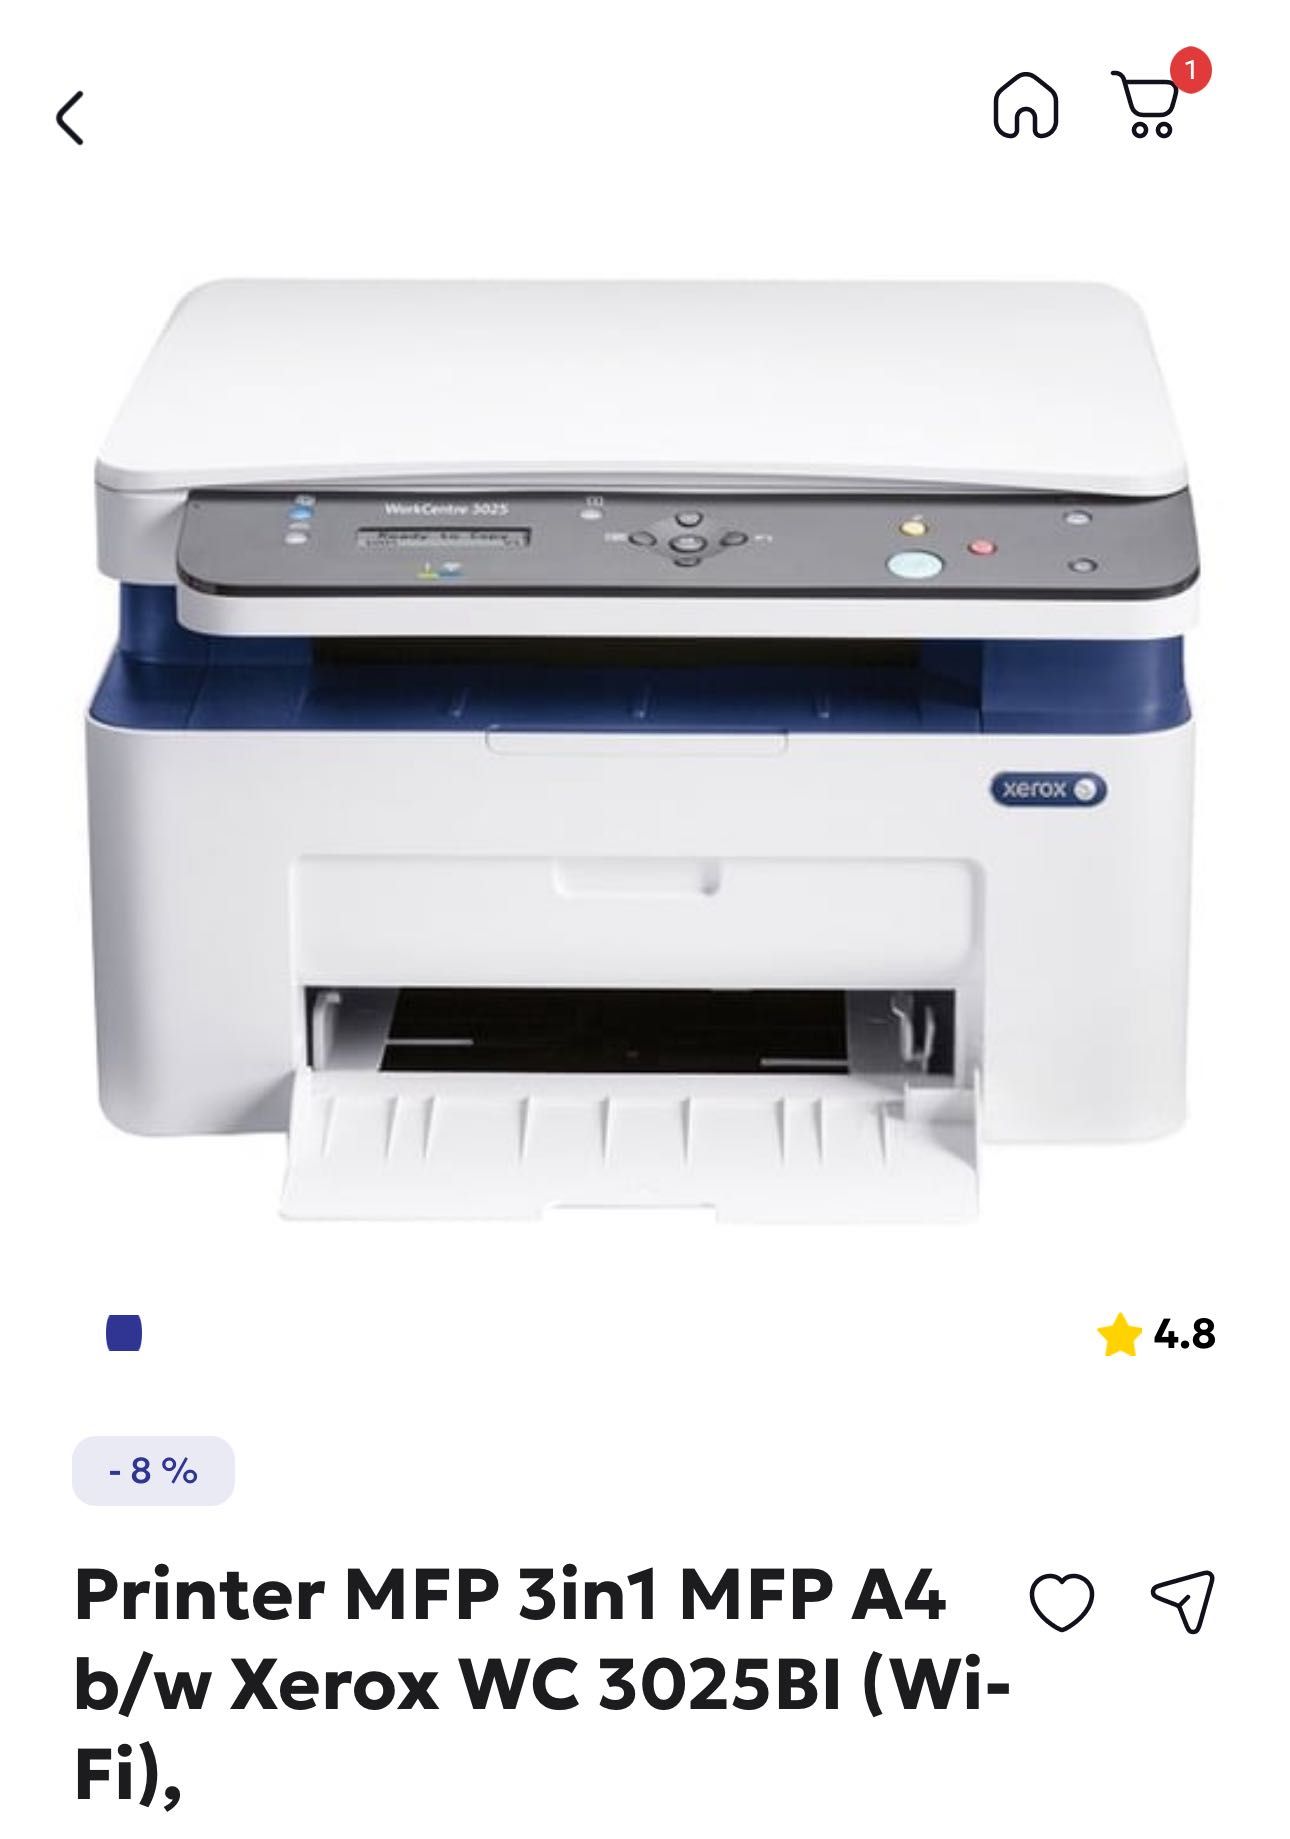 Printer MFP 3in1 MFP A4 b/w Xerox WC 3025BI (Wi-Fi), yangi,1 oyishladi